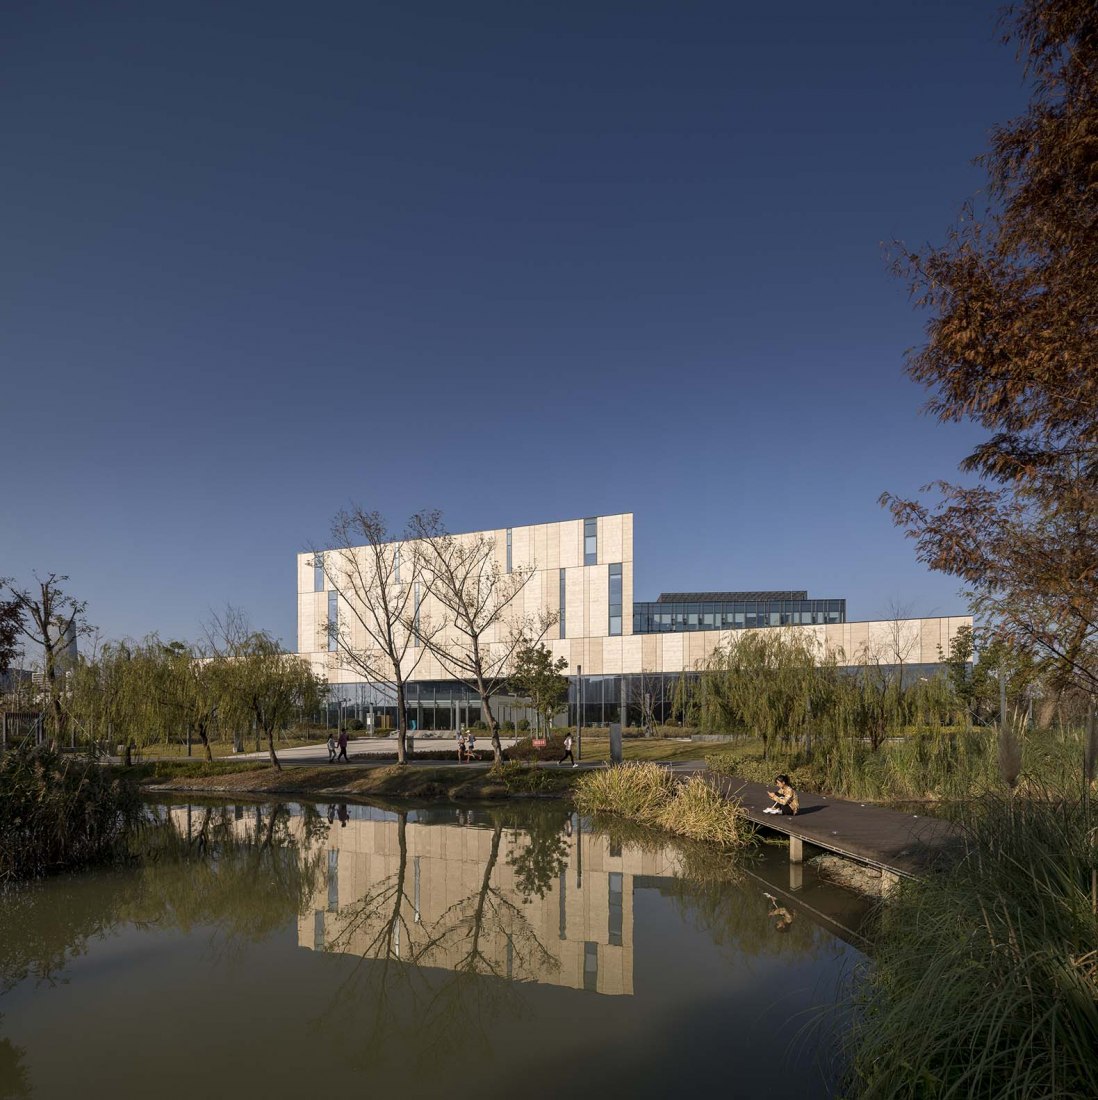 Nueva biblioteca de Ningbo por Schmidt Hammer Lassen Architects. Fotografía por Adam Mørk